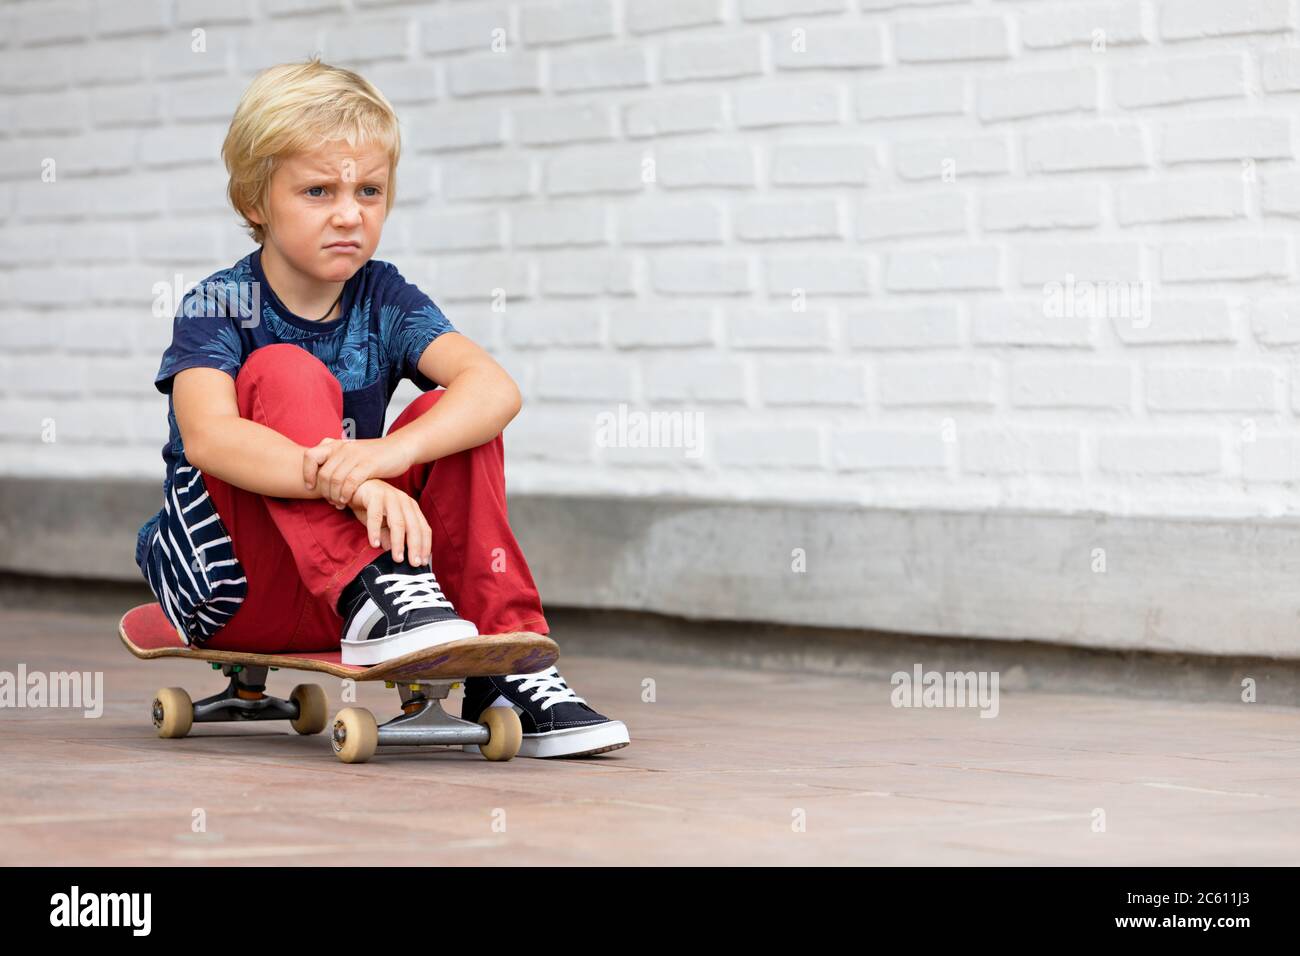 Le patineur qui a l'air malheureux et contrarié s'assoit sur le skateboard avant que les enfants s'entraîne dans le parc de skate vie familiale active, activités de loisirs en plein air Banque D'Images